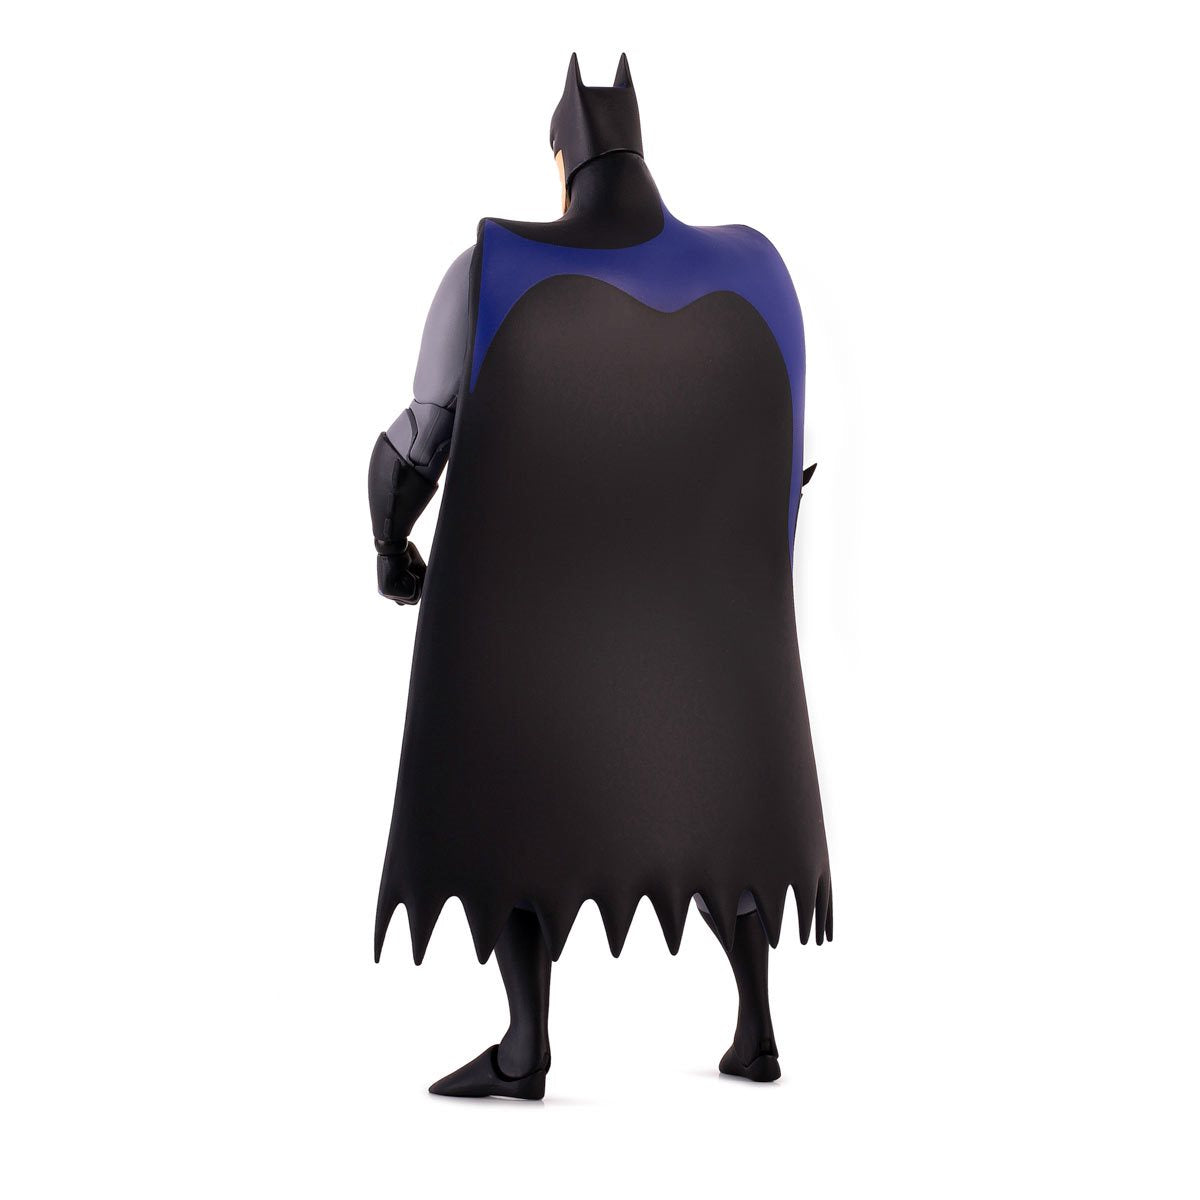 Batman: The Animated Series Batman Redux 1:6 Scale Action Figure by Mondo